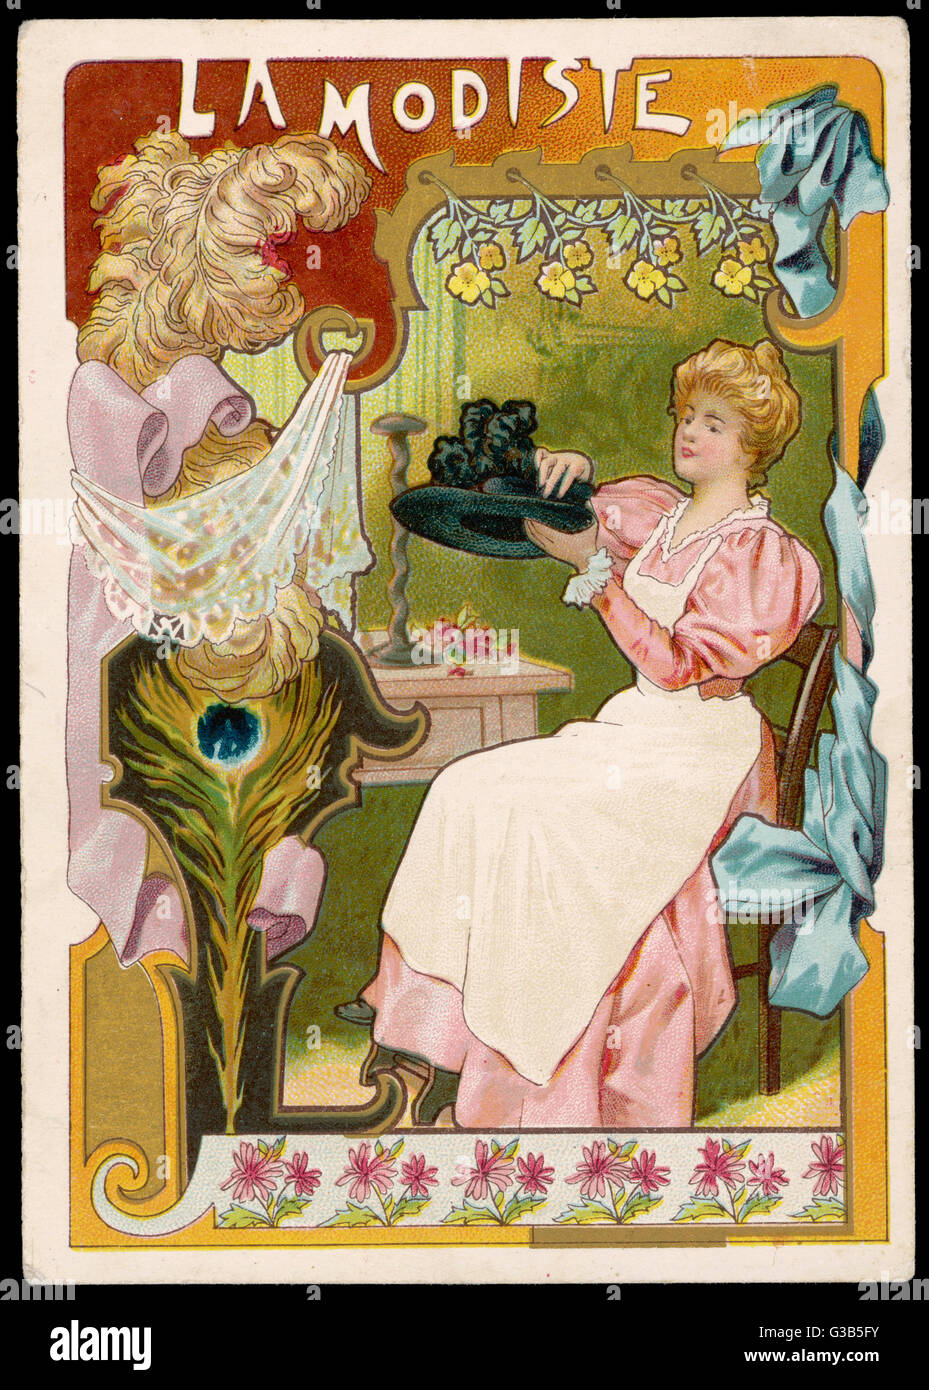 La modiste (modiste) travaille sur un chapeau. Date : vers 1900 Photo Stock  - Alamy